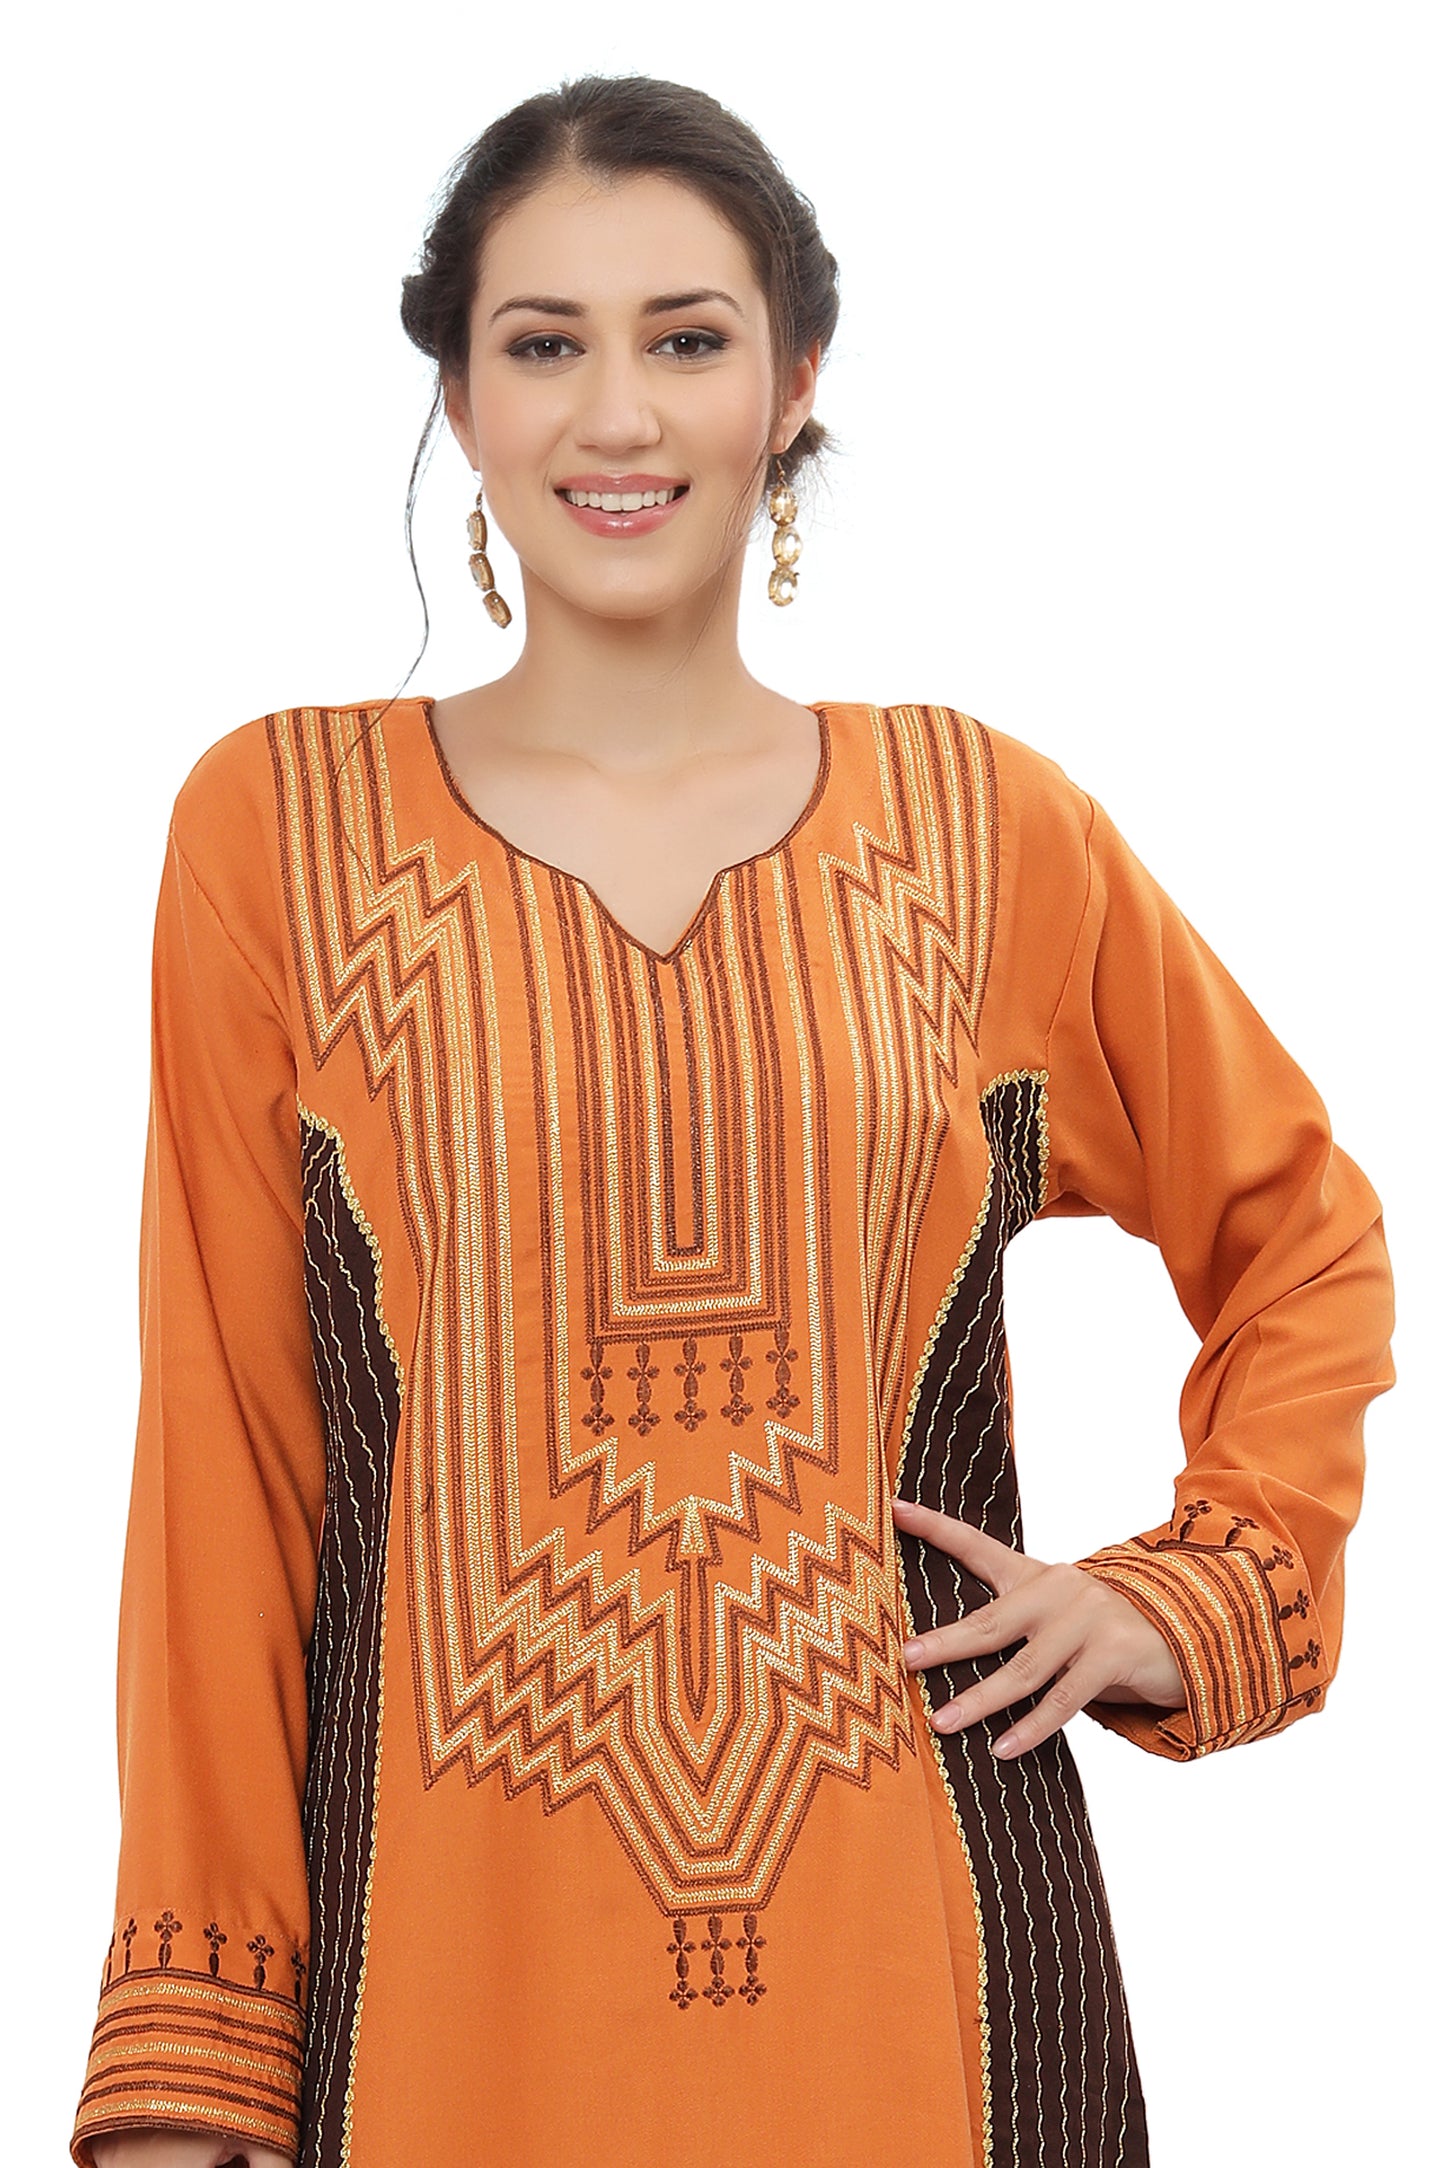 Arabian Maxi Long Kaftan Dress